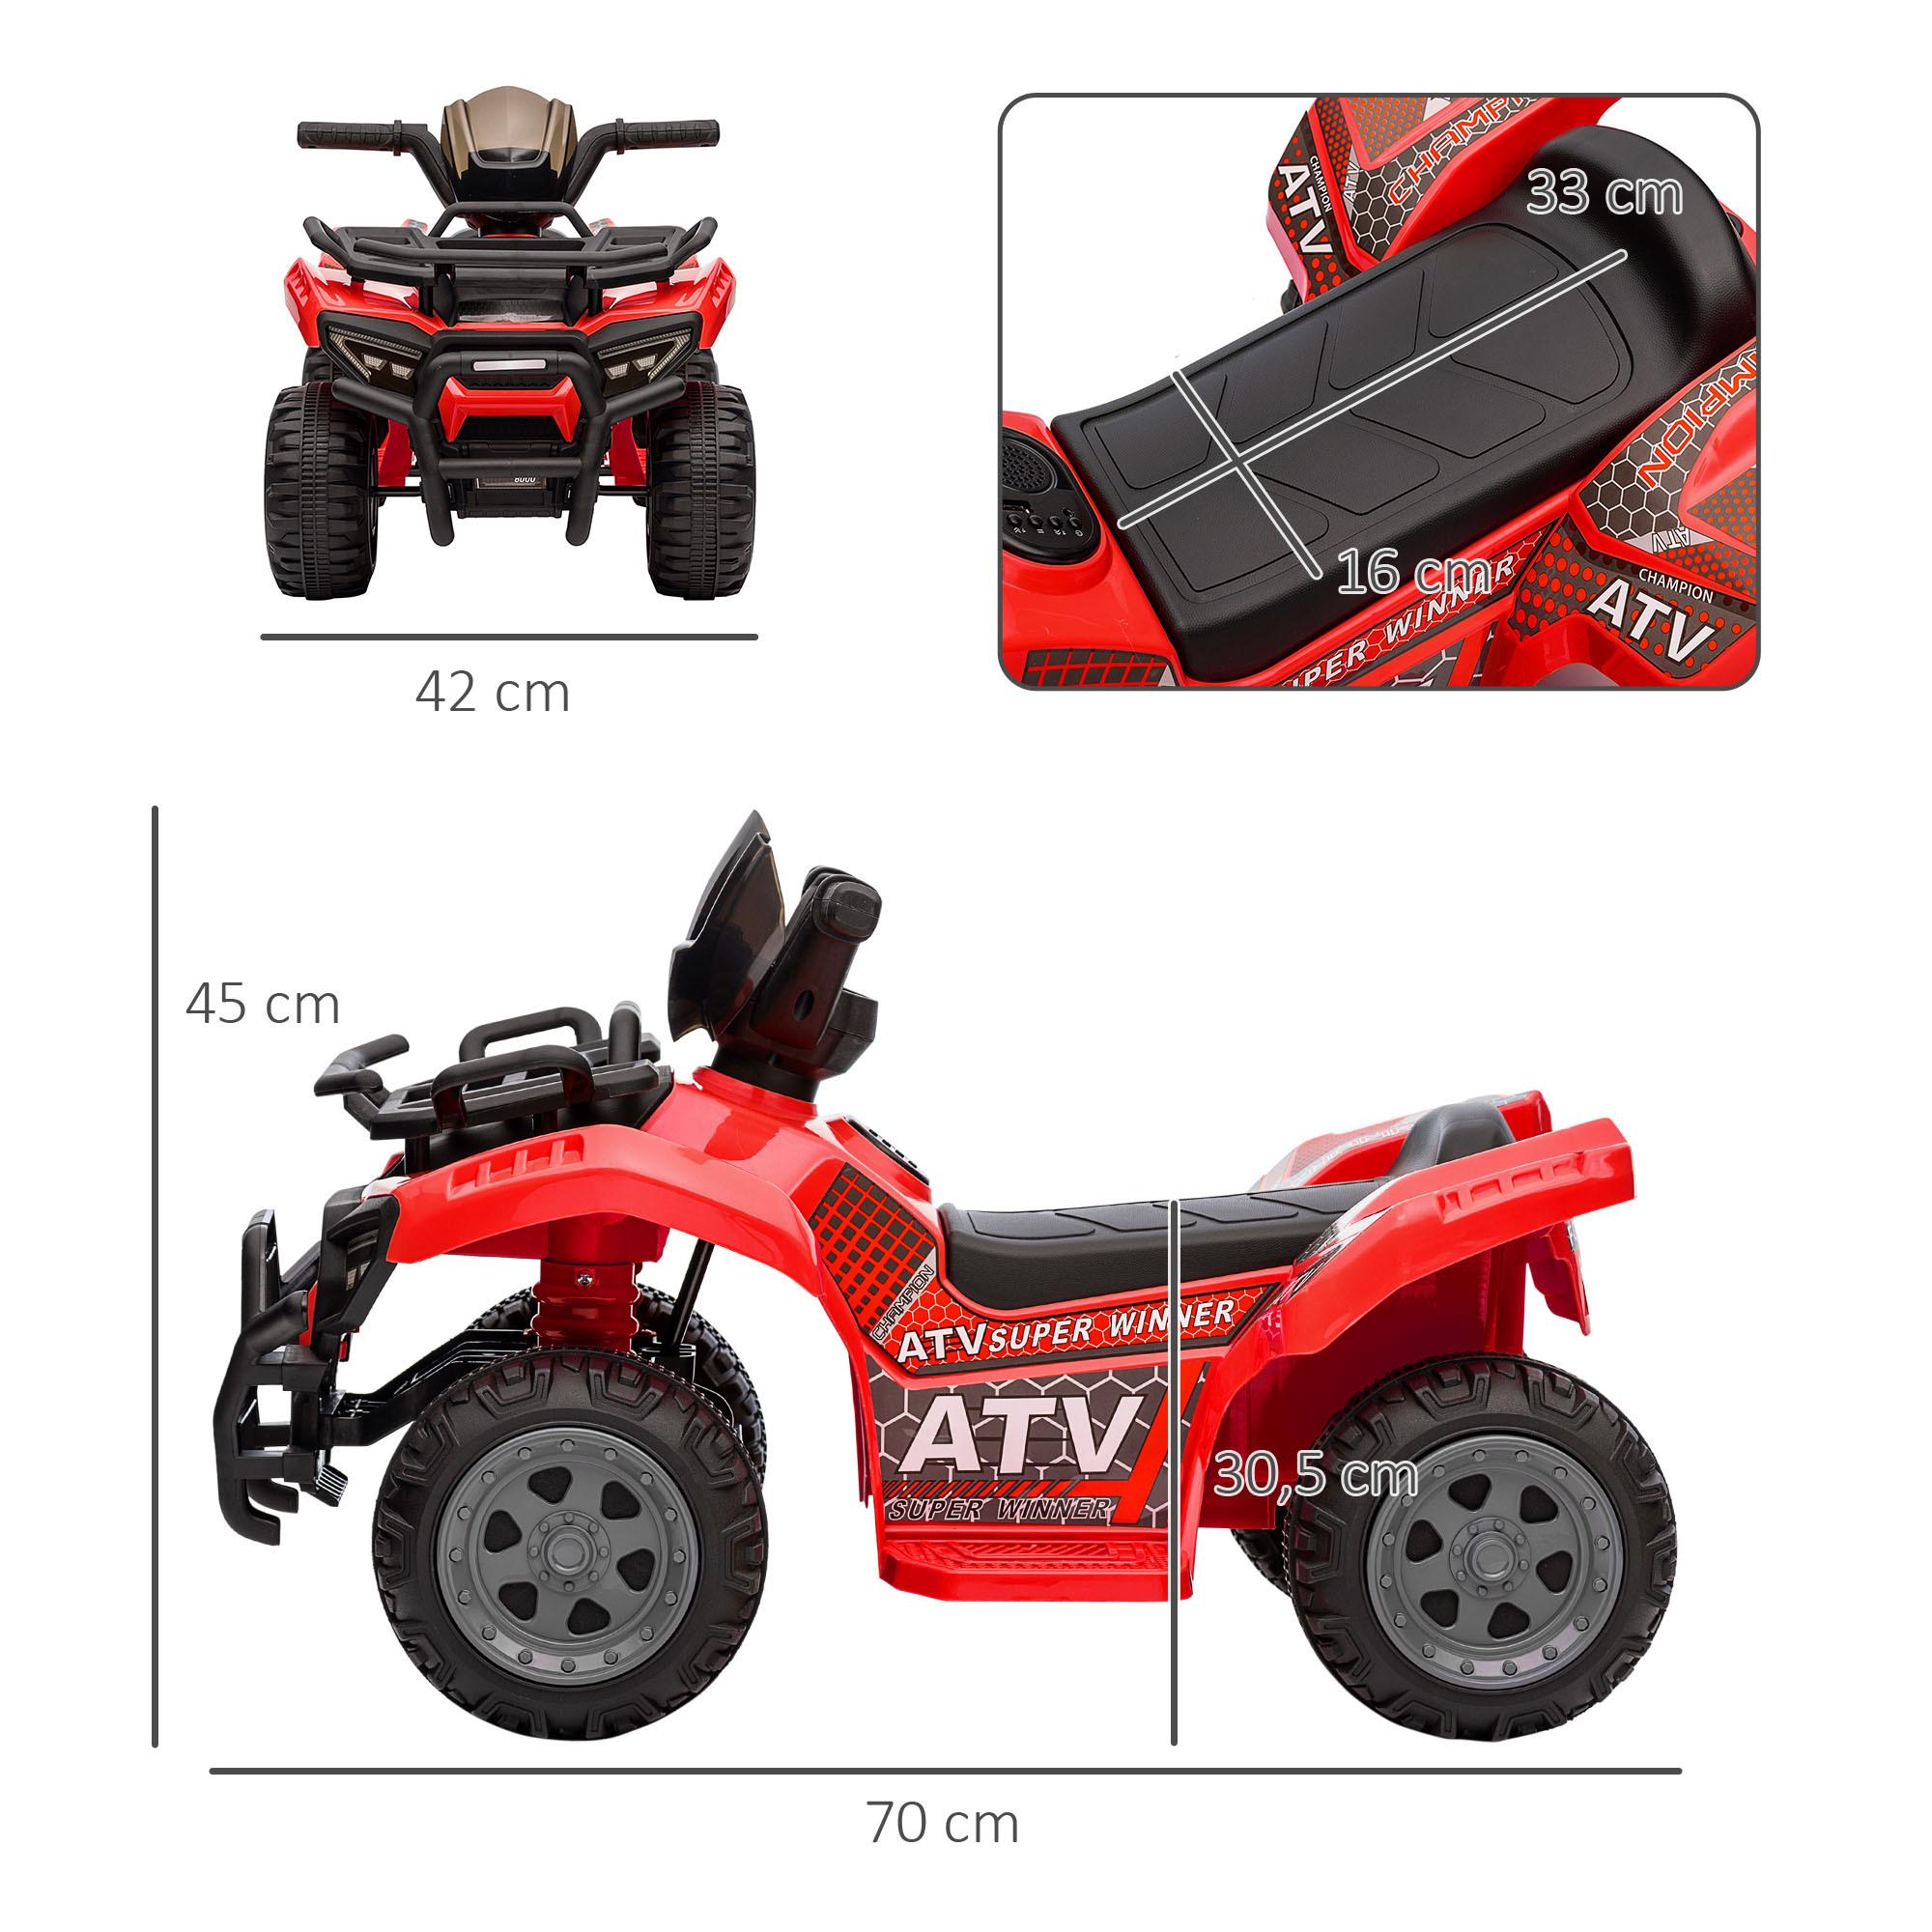 Quad buggy voiture électrique enfant 18-36 mois 6 V 2 Km/h max. effet lumineux métal PP rouge